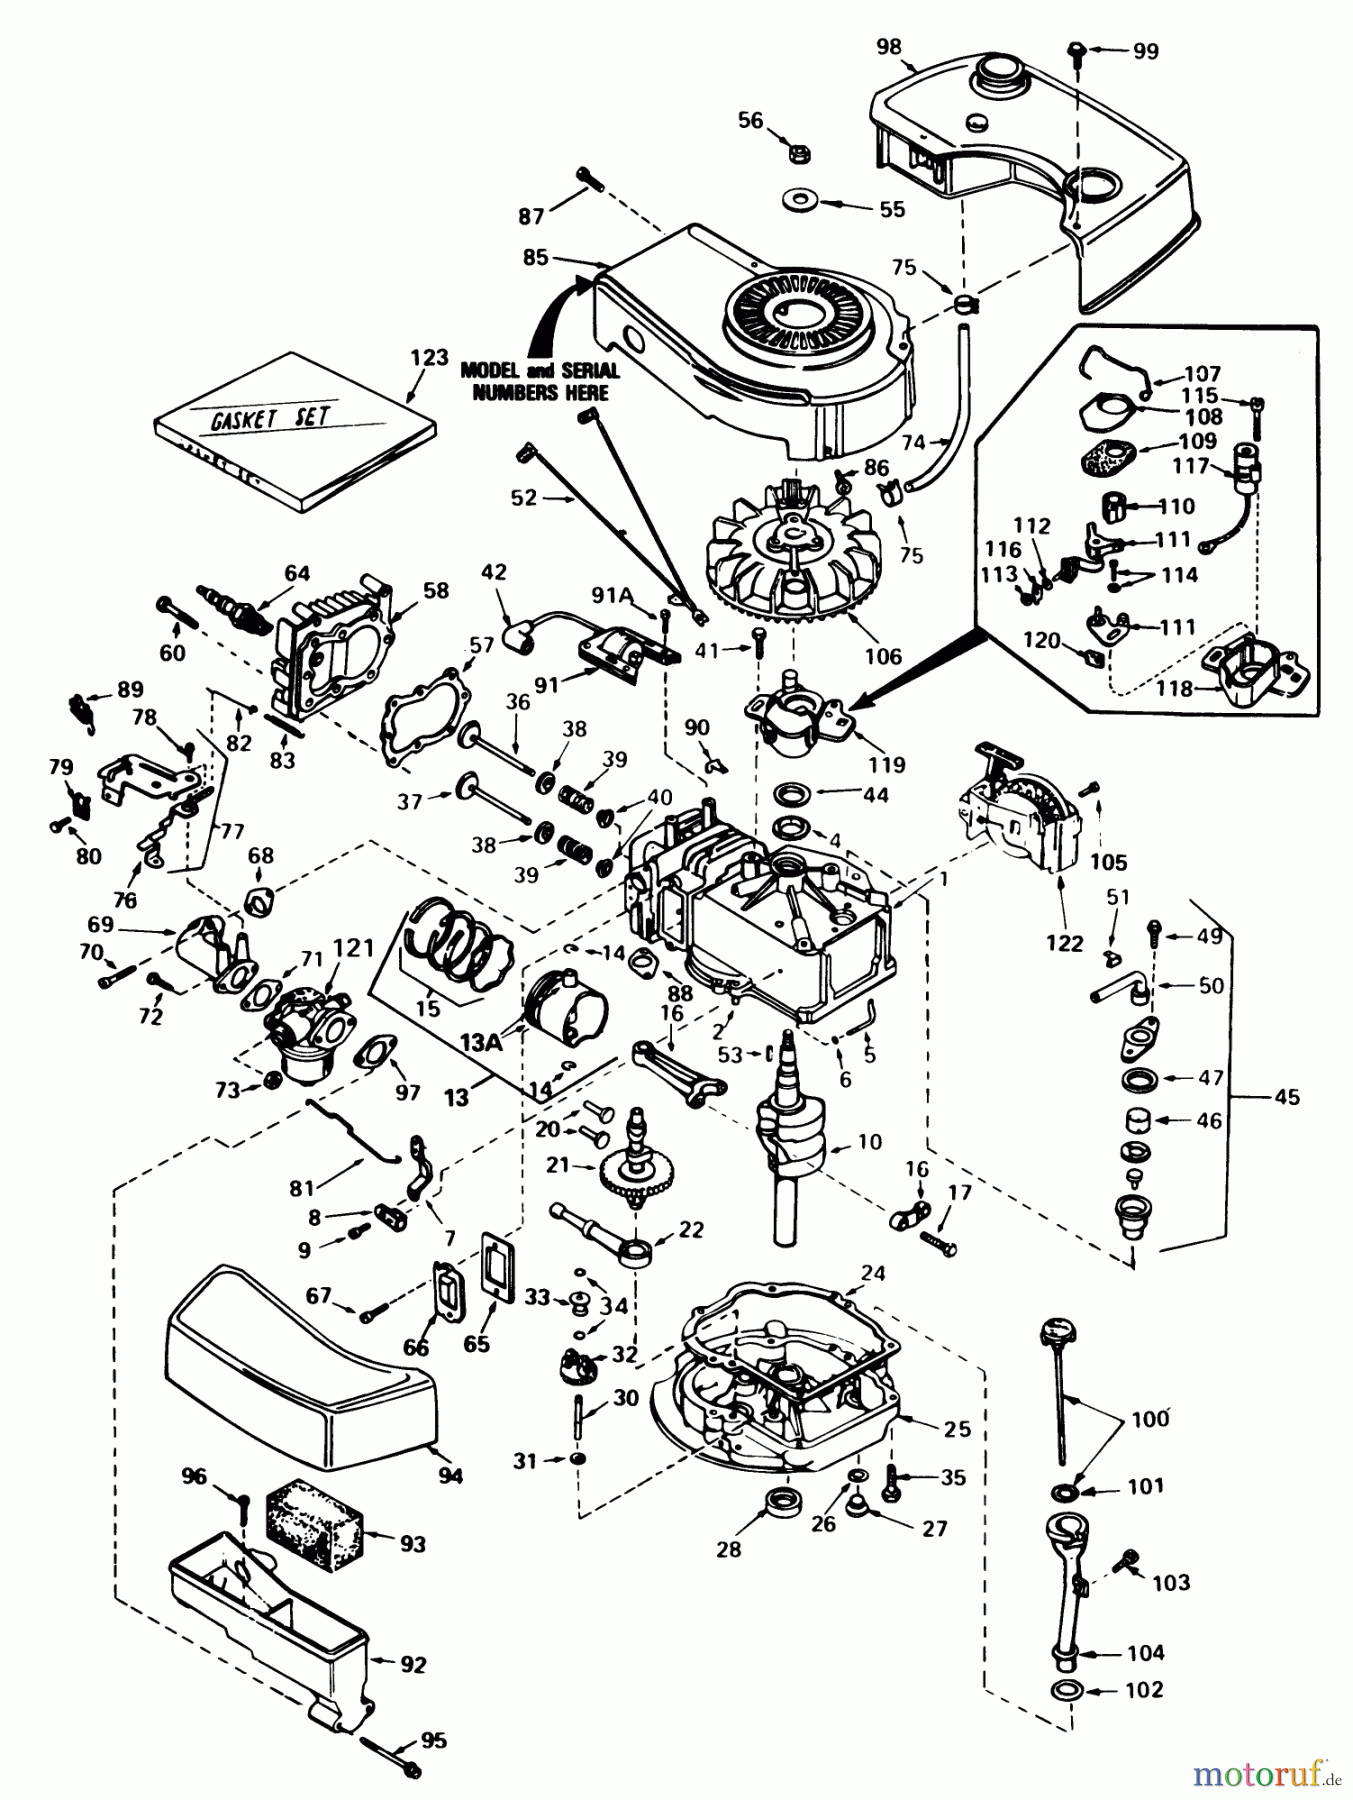  Toro Neu Mowers, Walk-Behind Seite 1 20700 - Toro Lawnmower, 1981 (1000001-1999999) ENGINE TECUMSEH MODEL NO. TNT 100-10070D